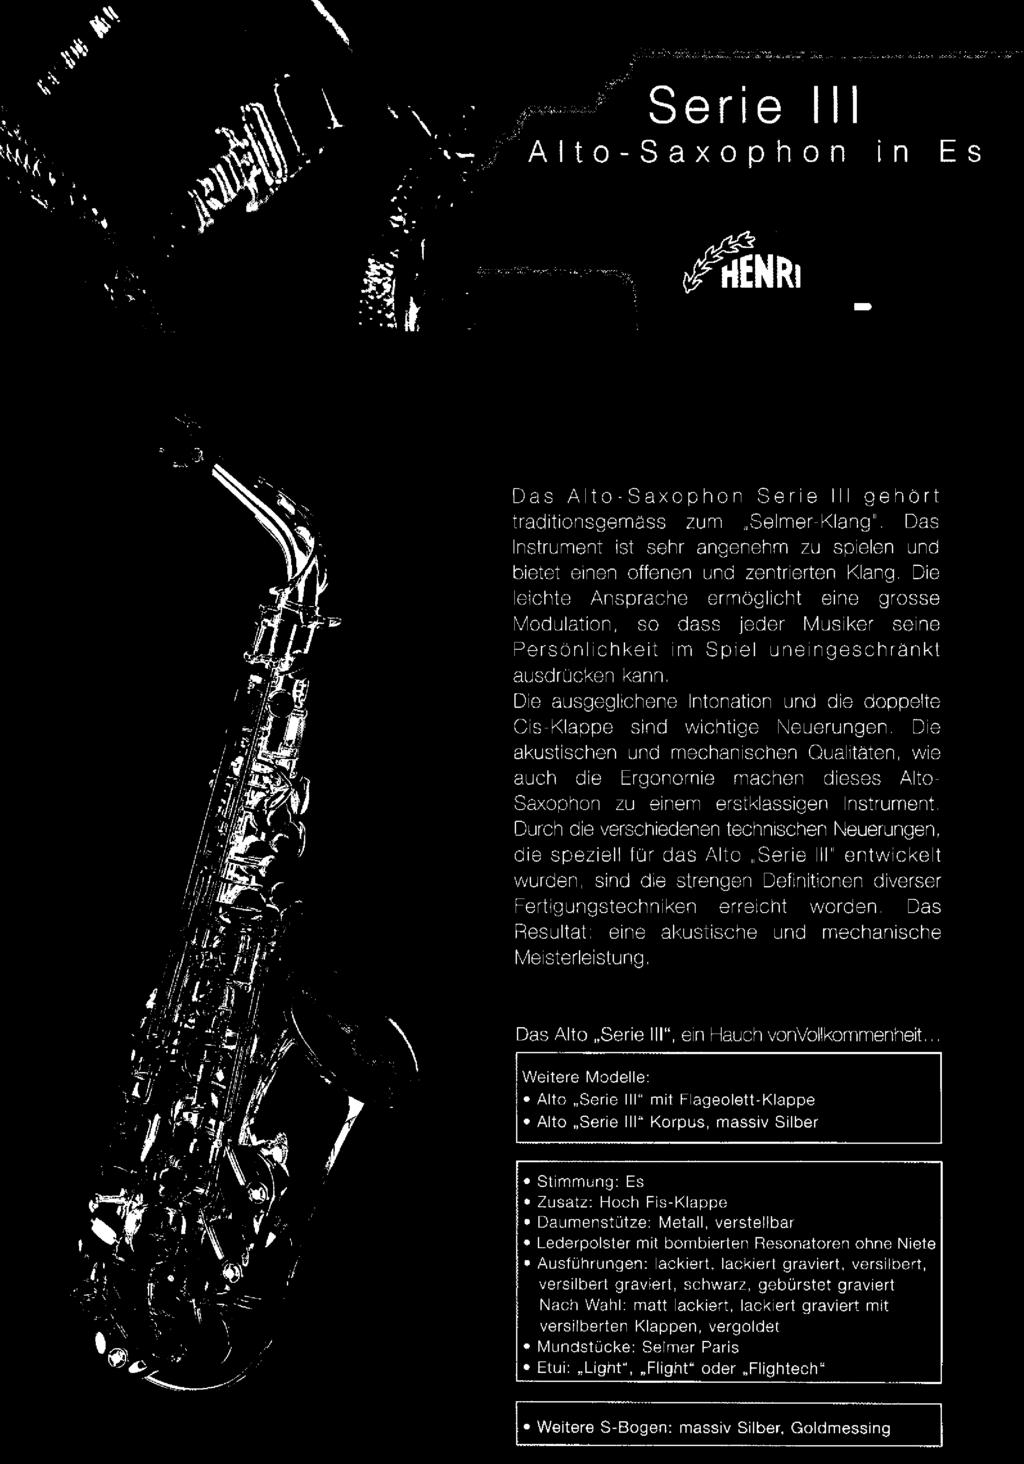 Das Alto-Saxophon Serie IH gehört traditionsgemäss zum Selmer-Klang'. Das Instrument ist sehr angenehm zu spielen und bietet einen offenen und zentrierten Klang.